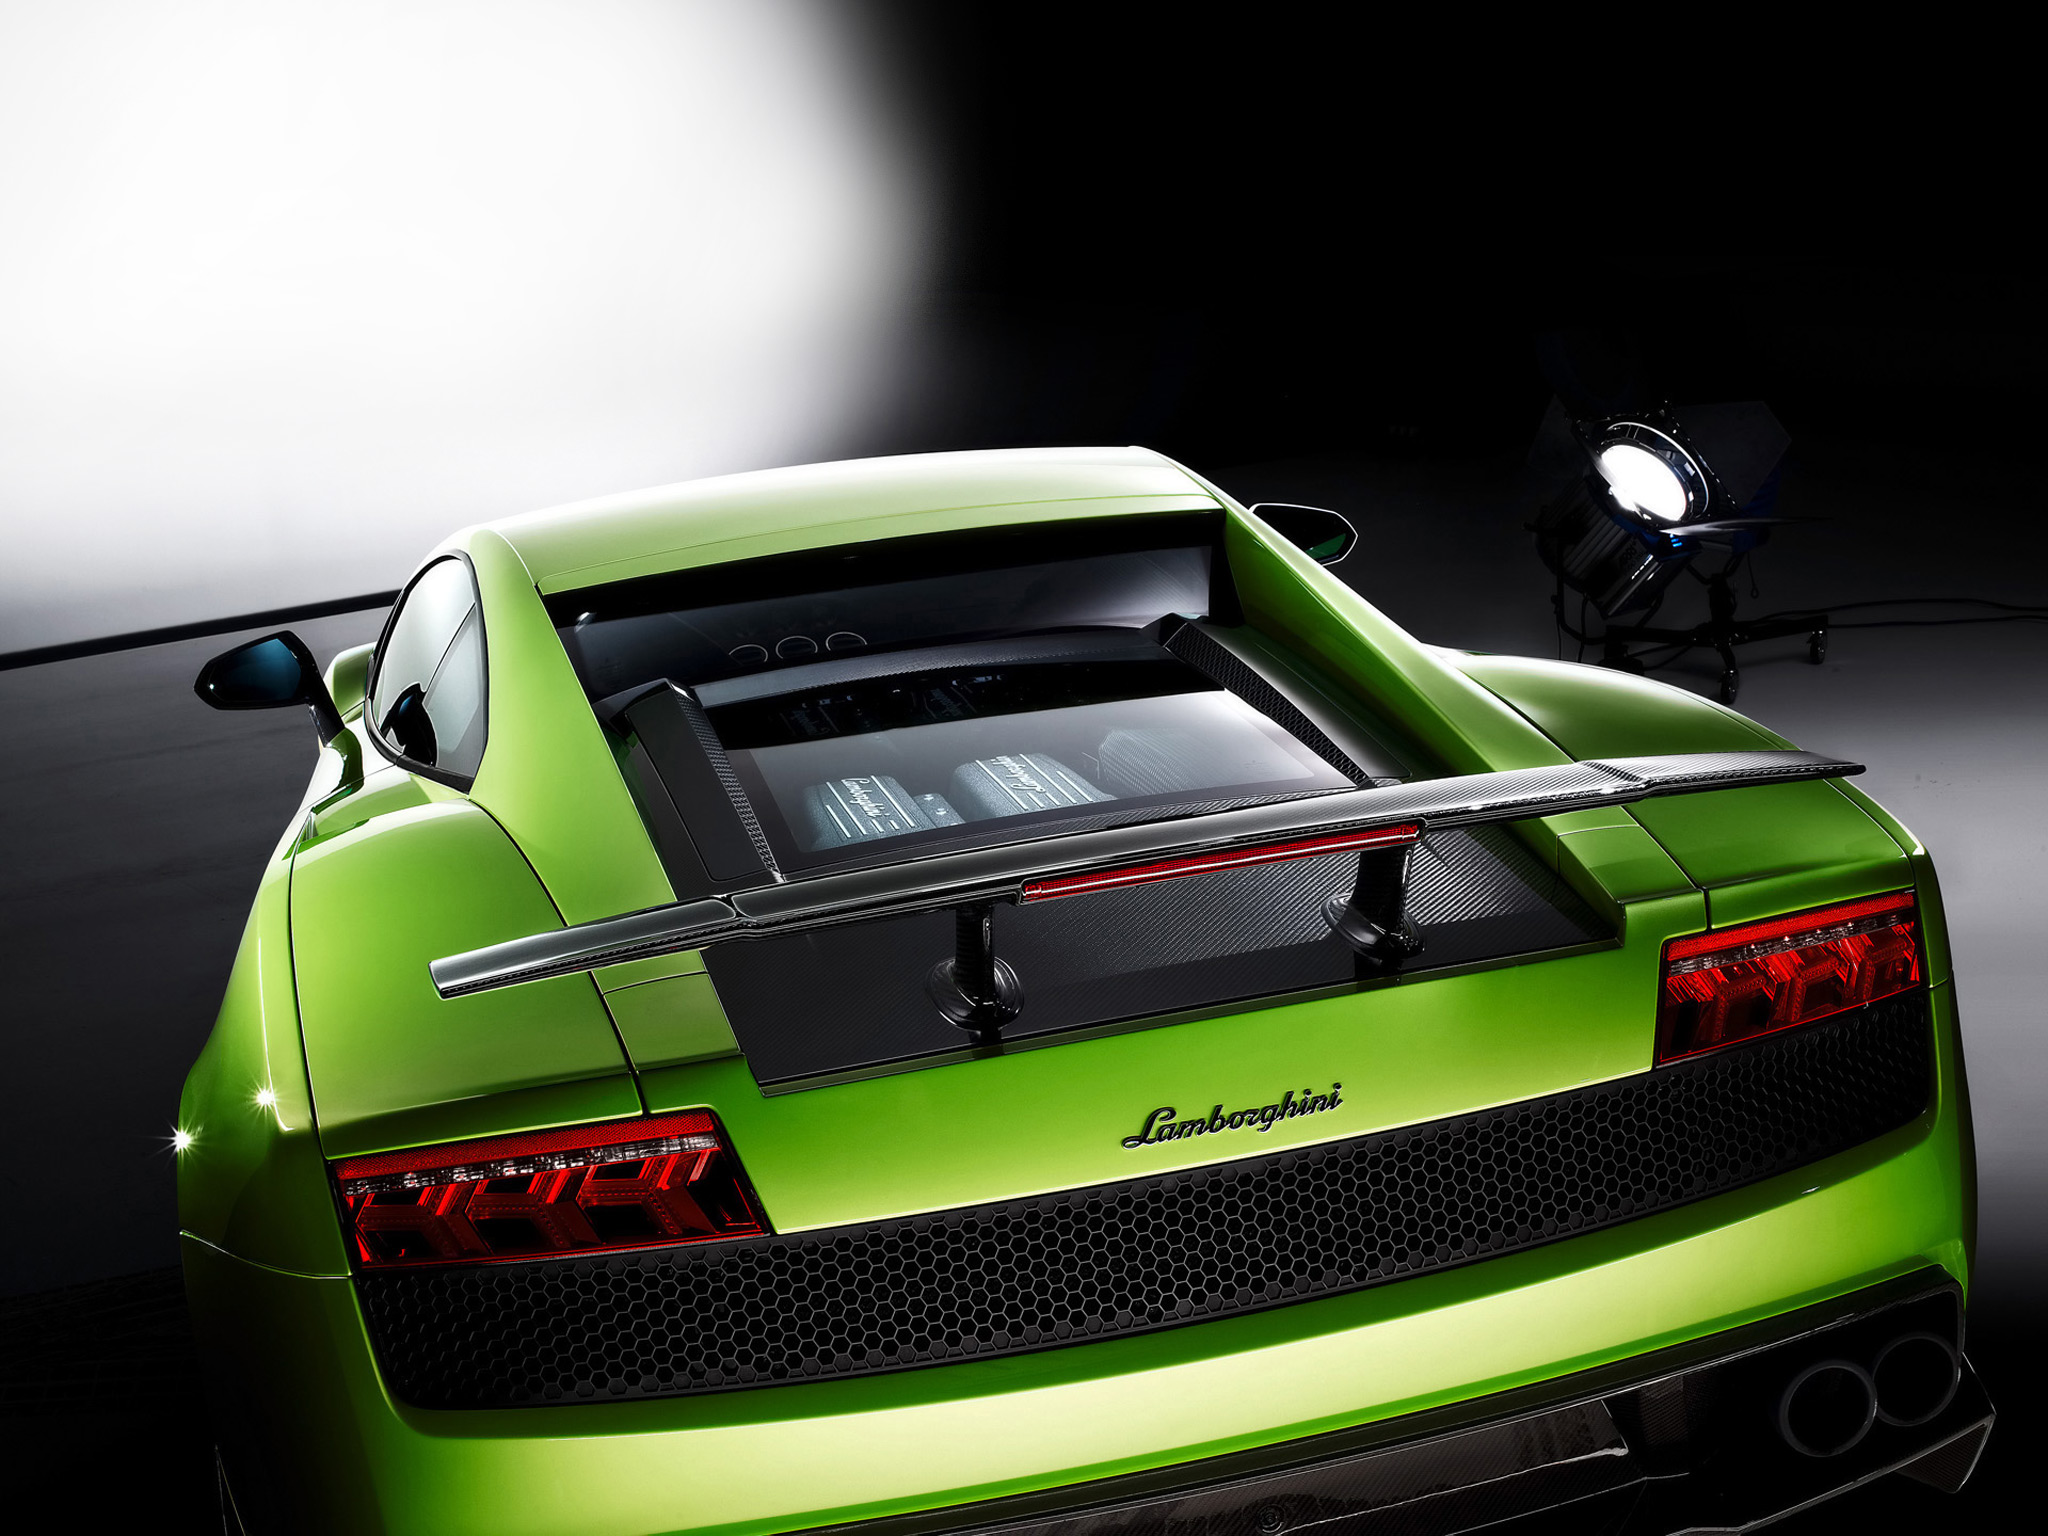  2010 Lamborghini Gallardo LP570-4 Superleggera Wallpaper.